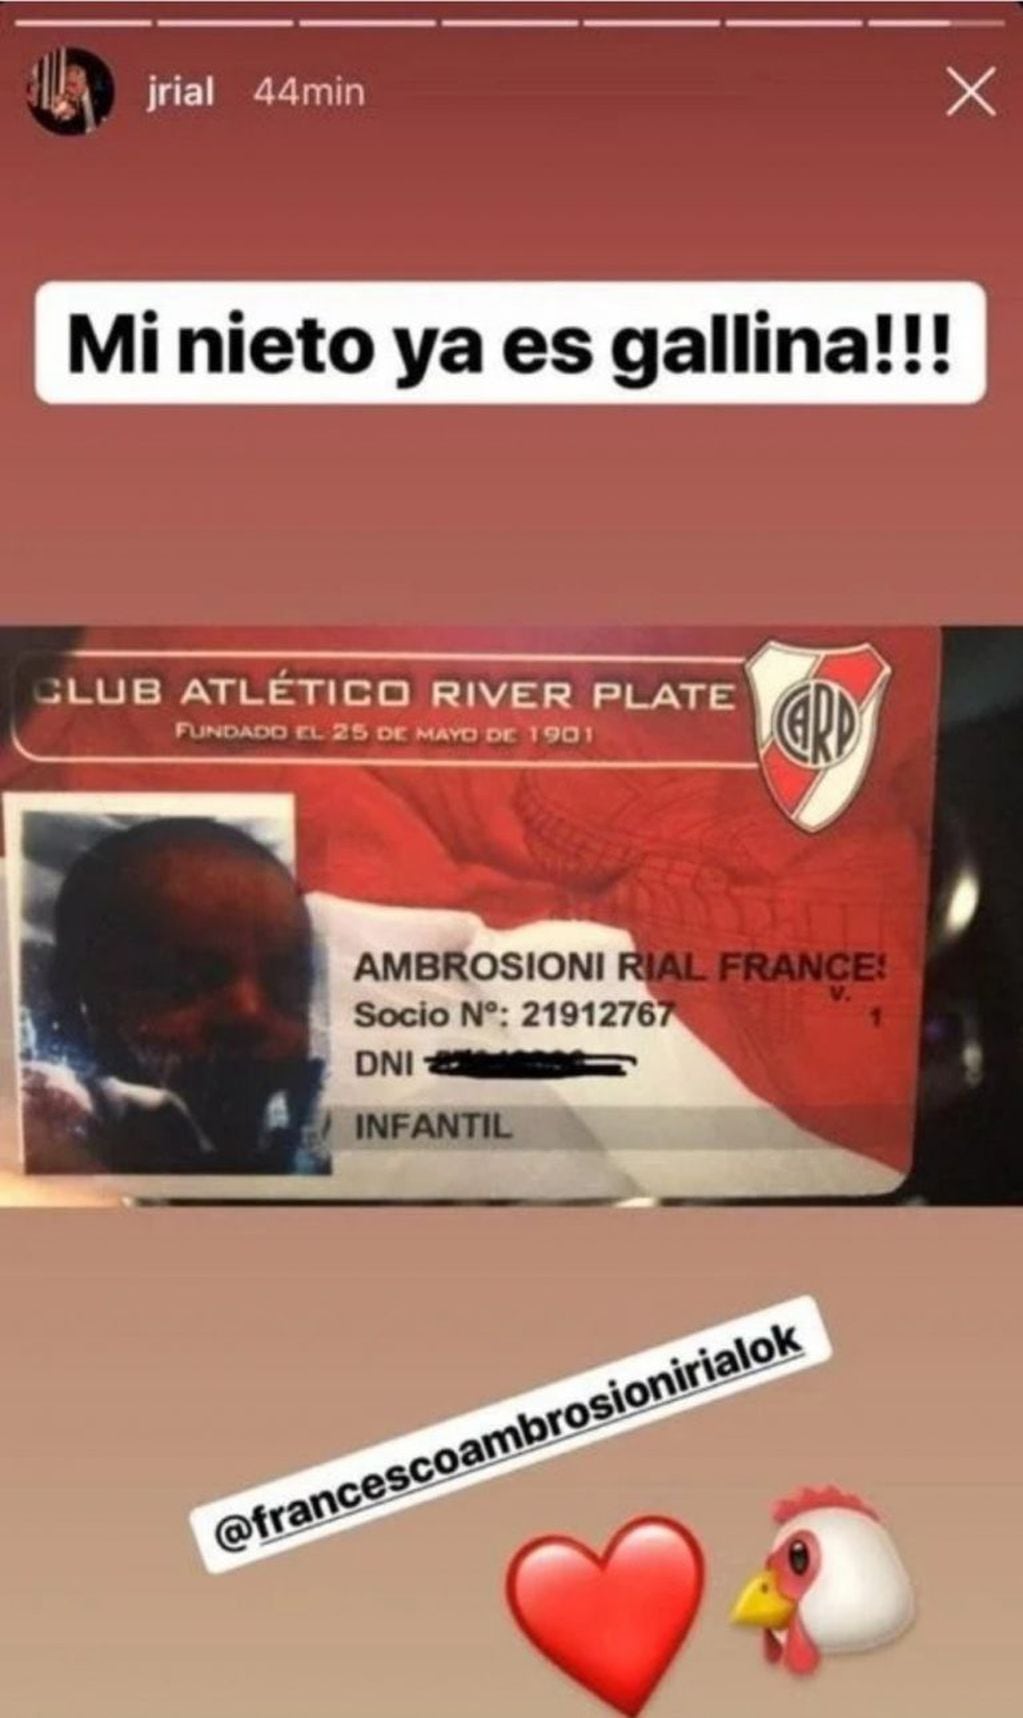 Jorge Rial subió a sus historias de Instagram una fotografía del carnet de socio de River de su nieto.